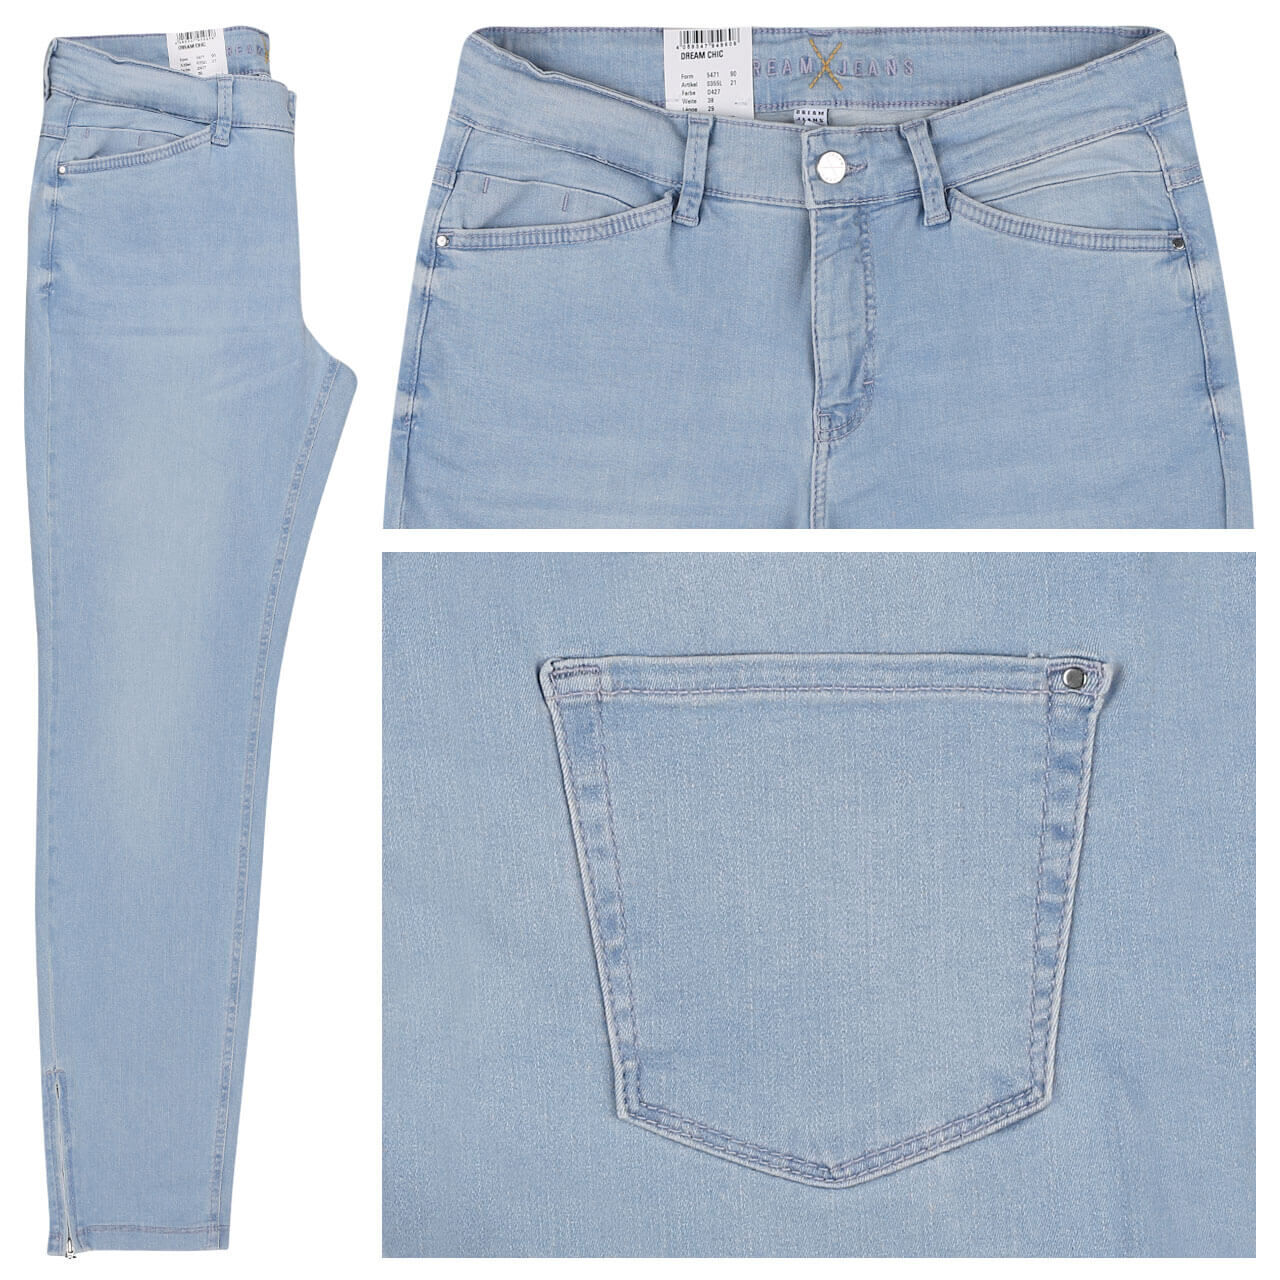 MAC Jeans Dream Chic für Damen in Hellblau angewaschen, FarbNr. D427